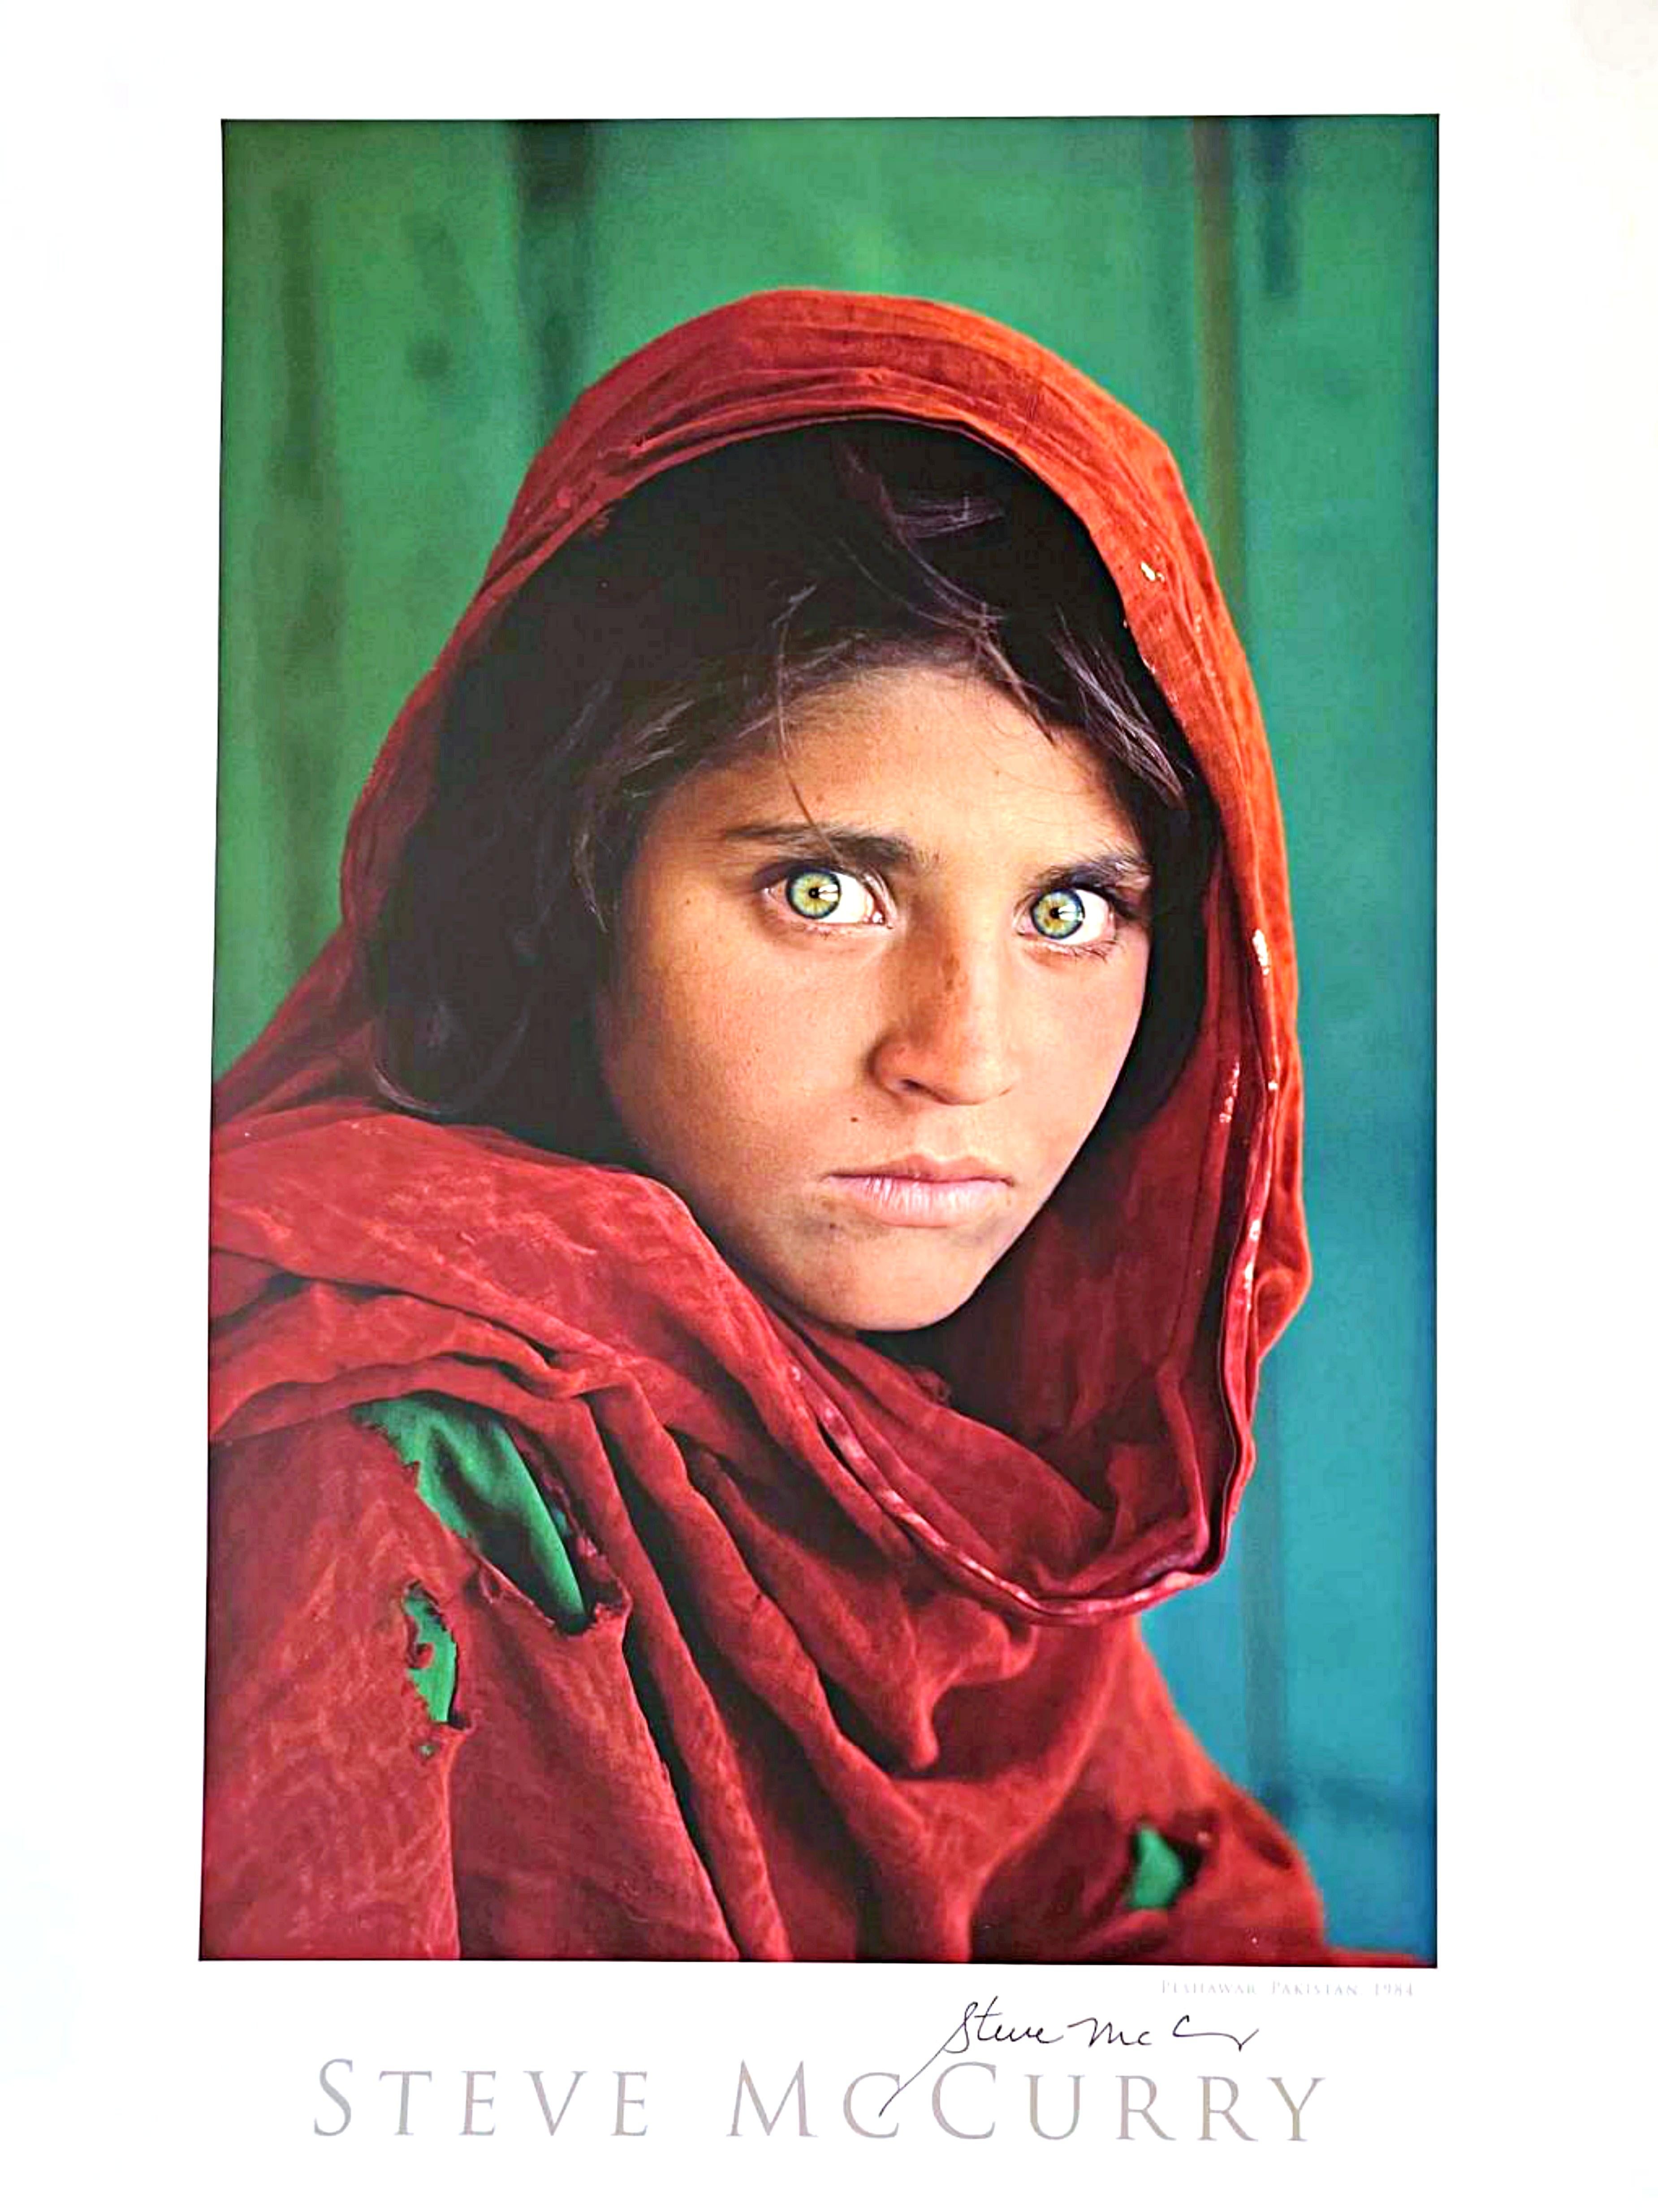 Steve McCurry
Sharbat Gula, Afghanisches Mädchen, Pakistan (handsigniert), 1984
Offset-Lithographie-Poster 
Auf der Vorderseite mit schwarzem Filzstift vom Fotografen handsigniert
24 × 20 Zoll
Ungerahmt
Dieses Offsetlithografie-Poster zeigt das